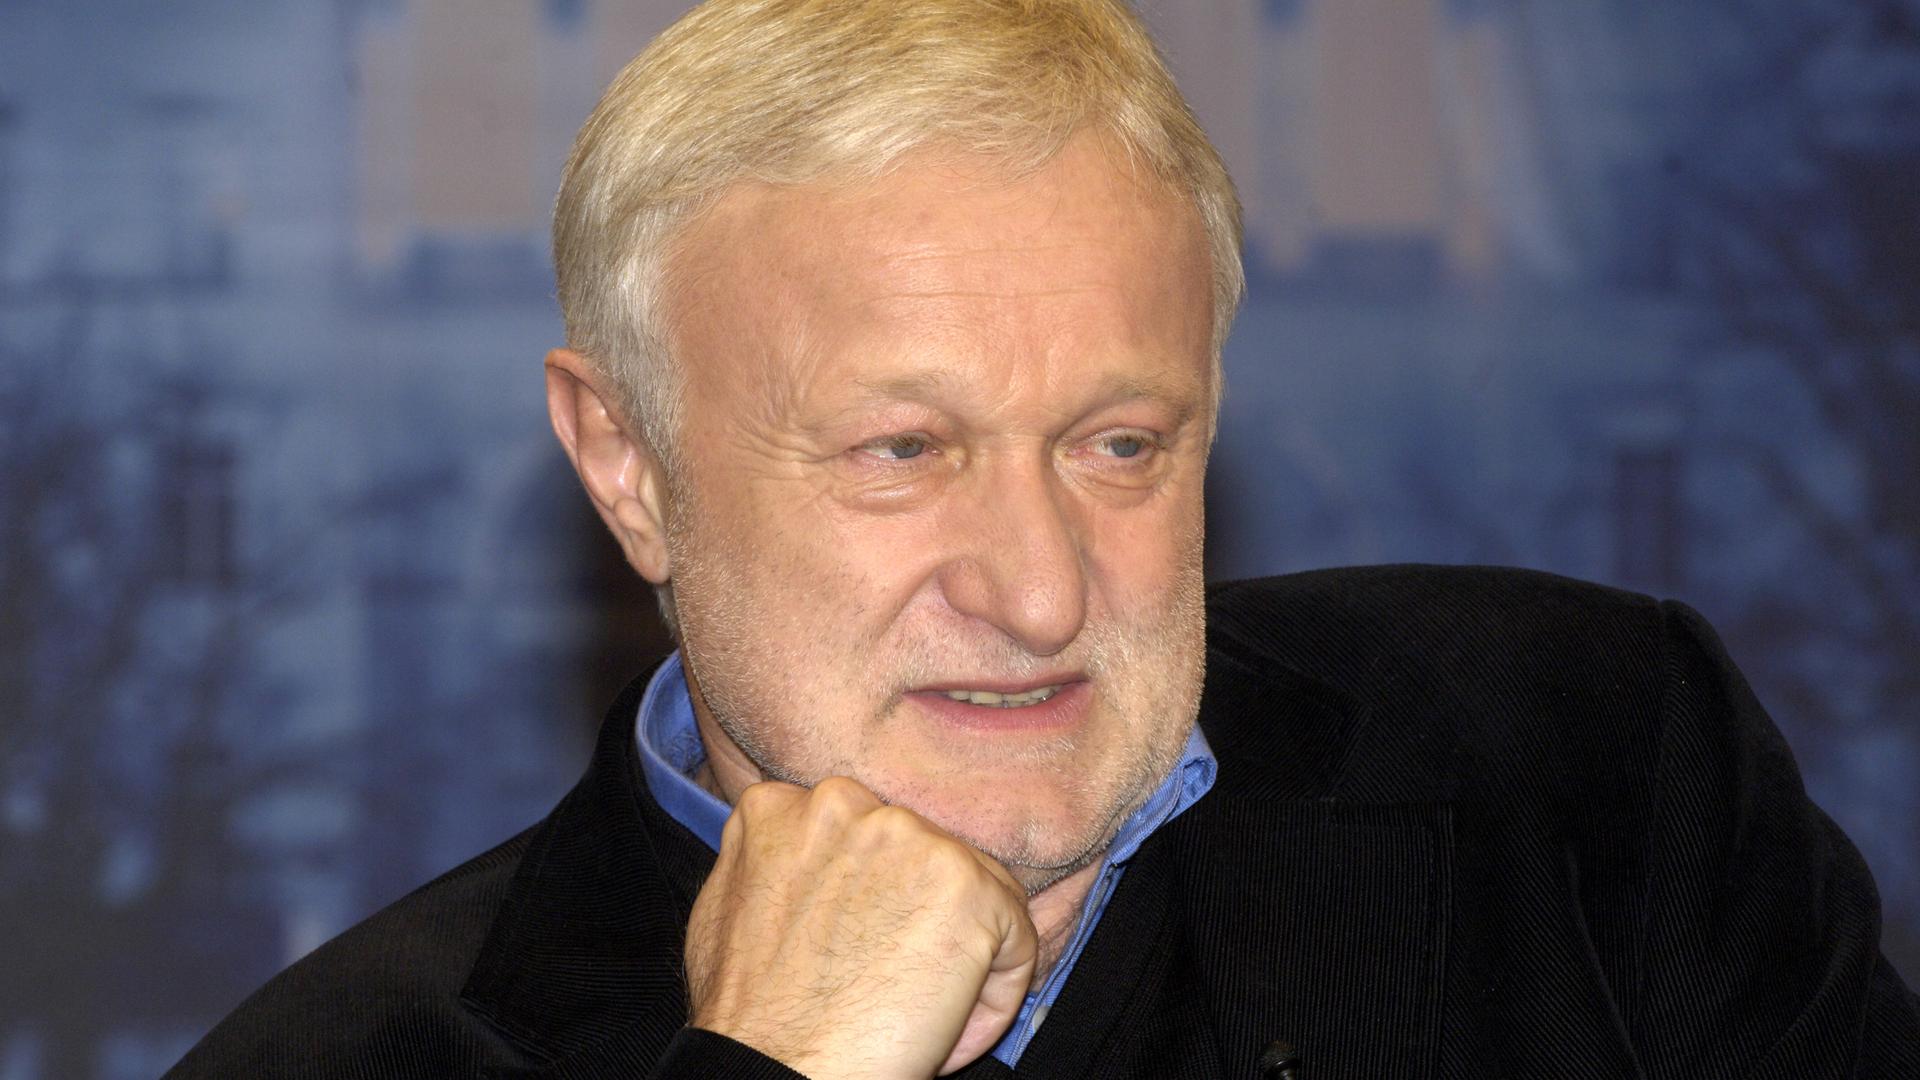 Der Politiker Werner Schulz (1950-2022) im Alter von 57 Jahren. Er stützt das Kinn auf eine Faust und blickt leicht zur Seite.